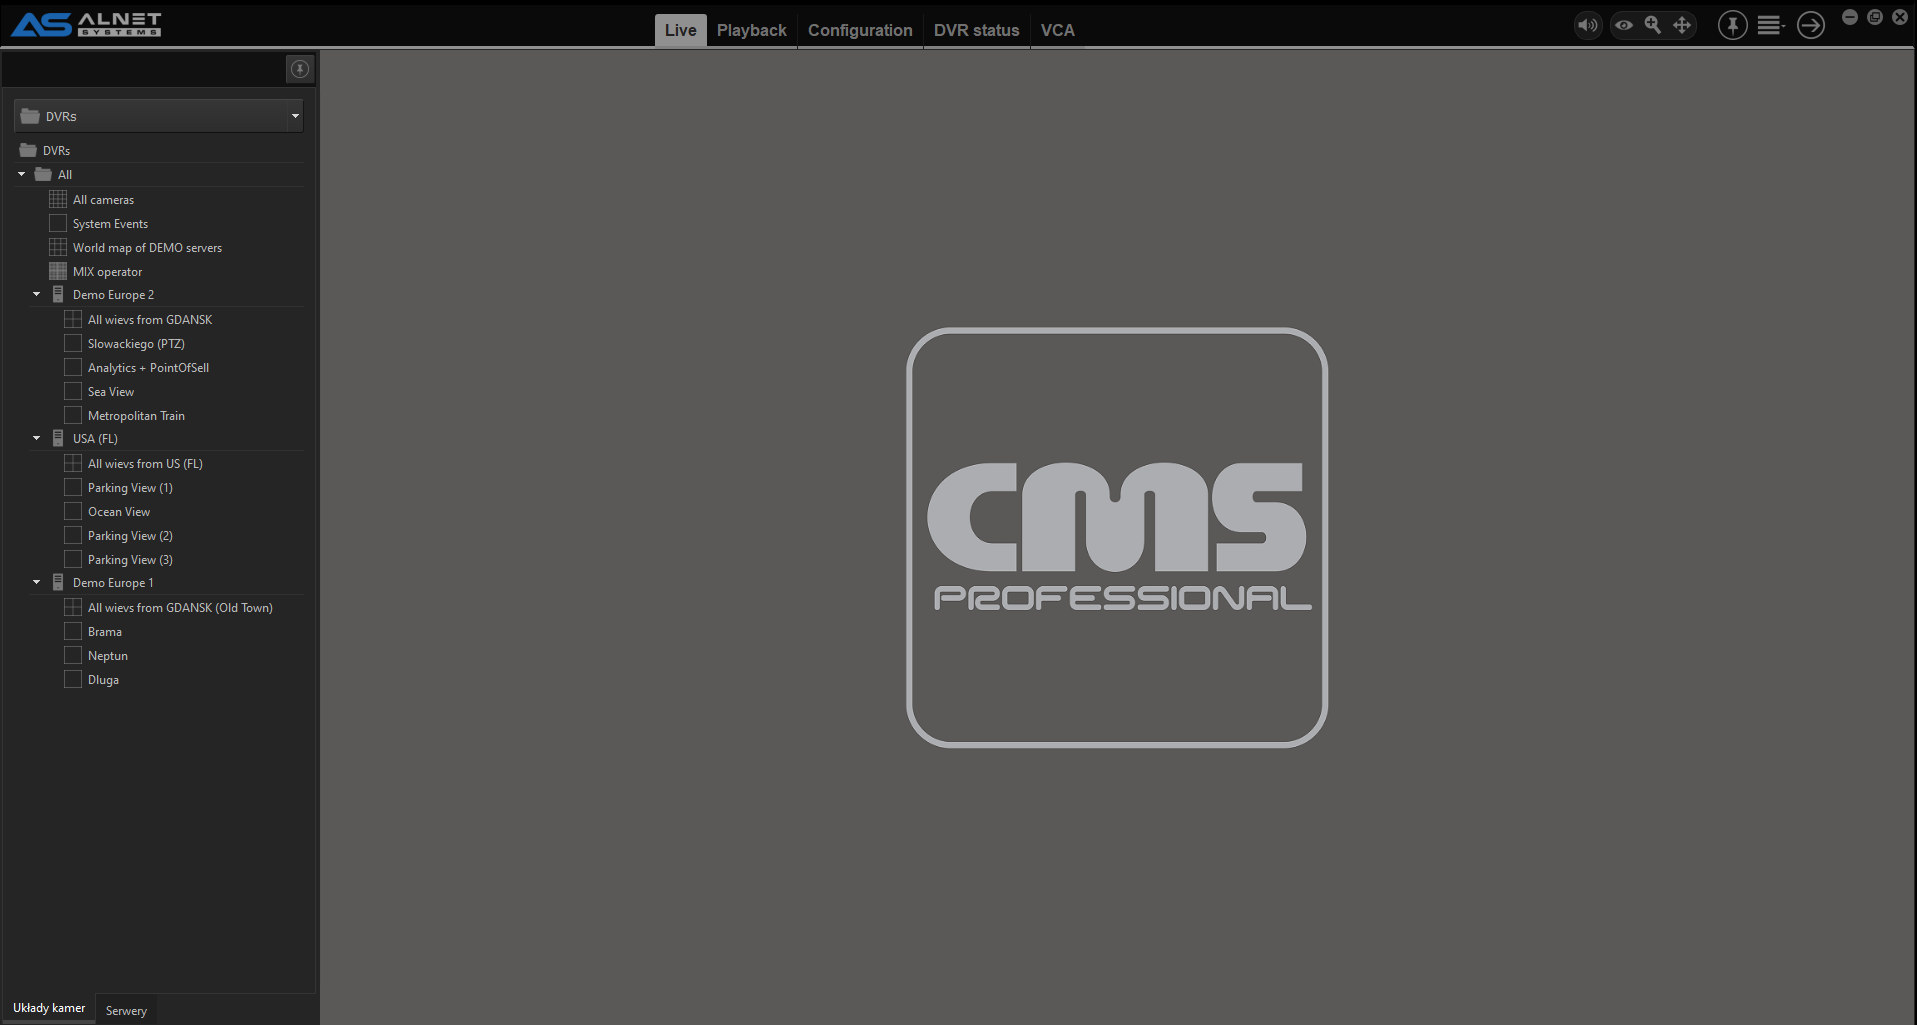 cms dvr software skin download